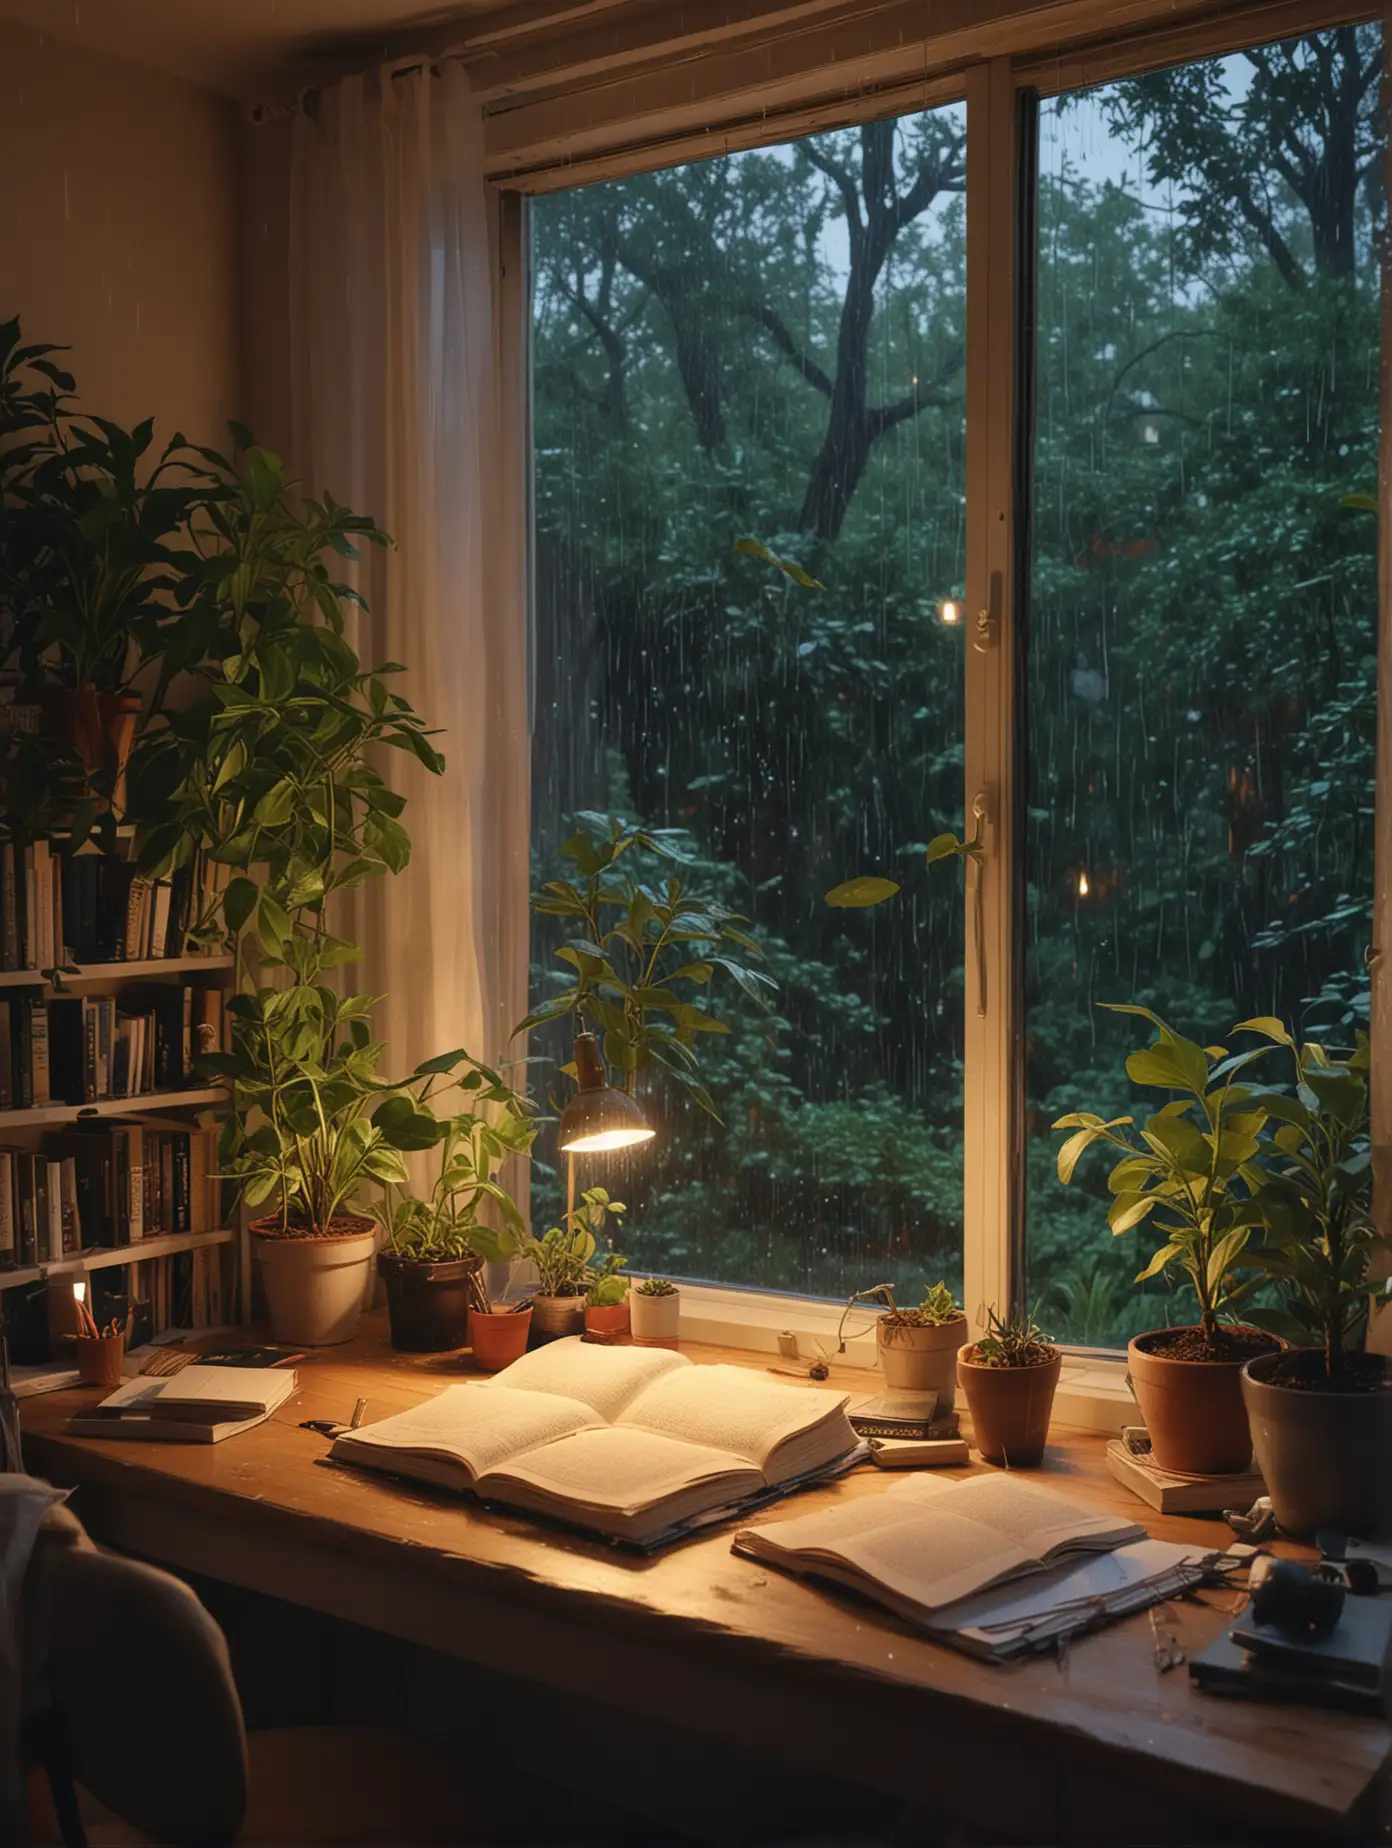 窗外下雨 植物 森林  书房 台灯  床 很多书 8k高清 书架 苹果电脑  温馨的书房 黄昏